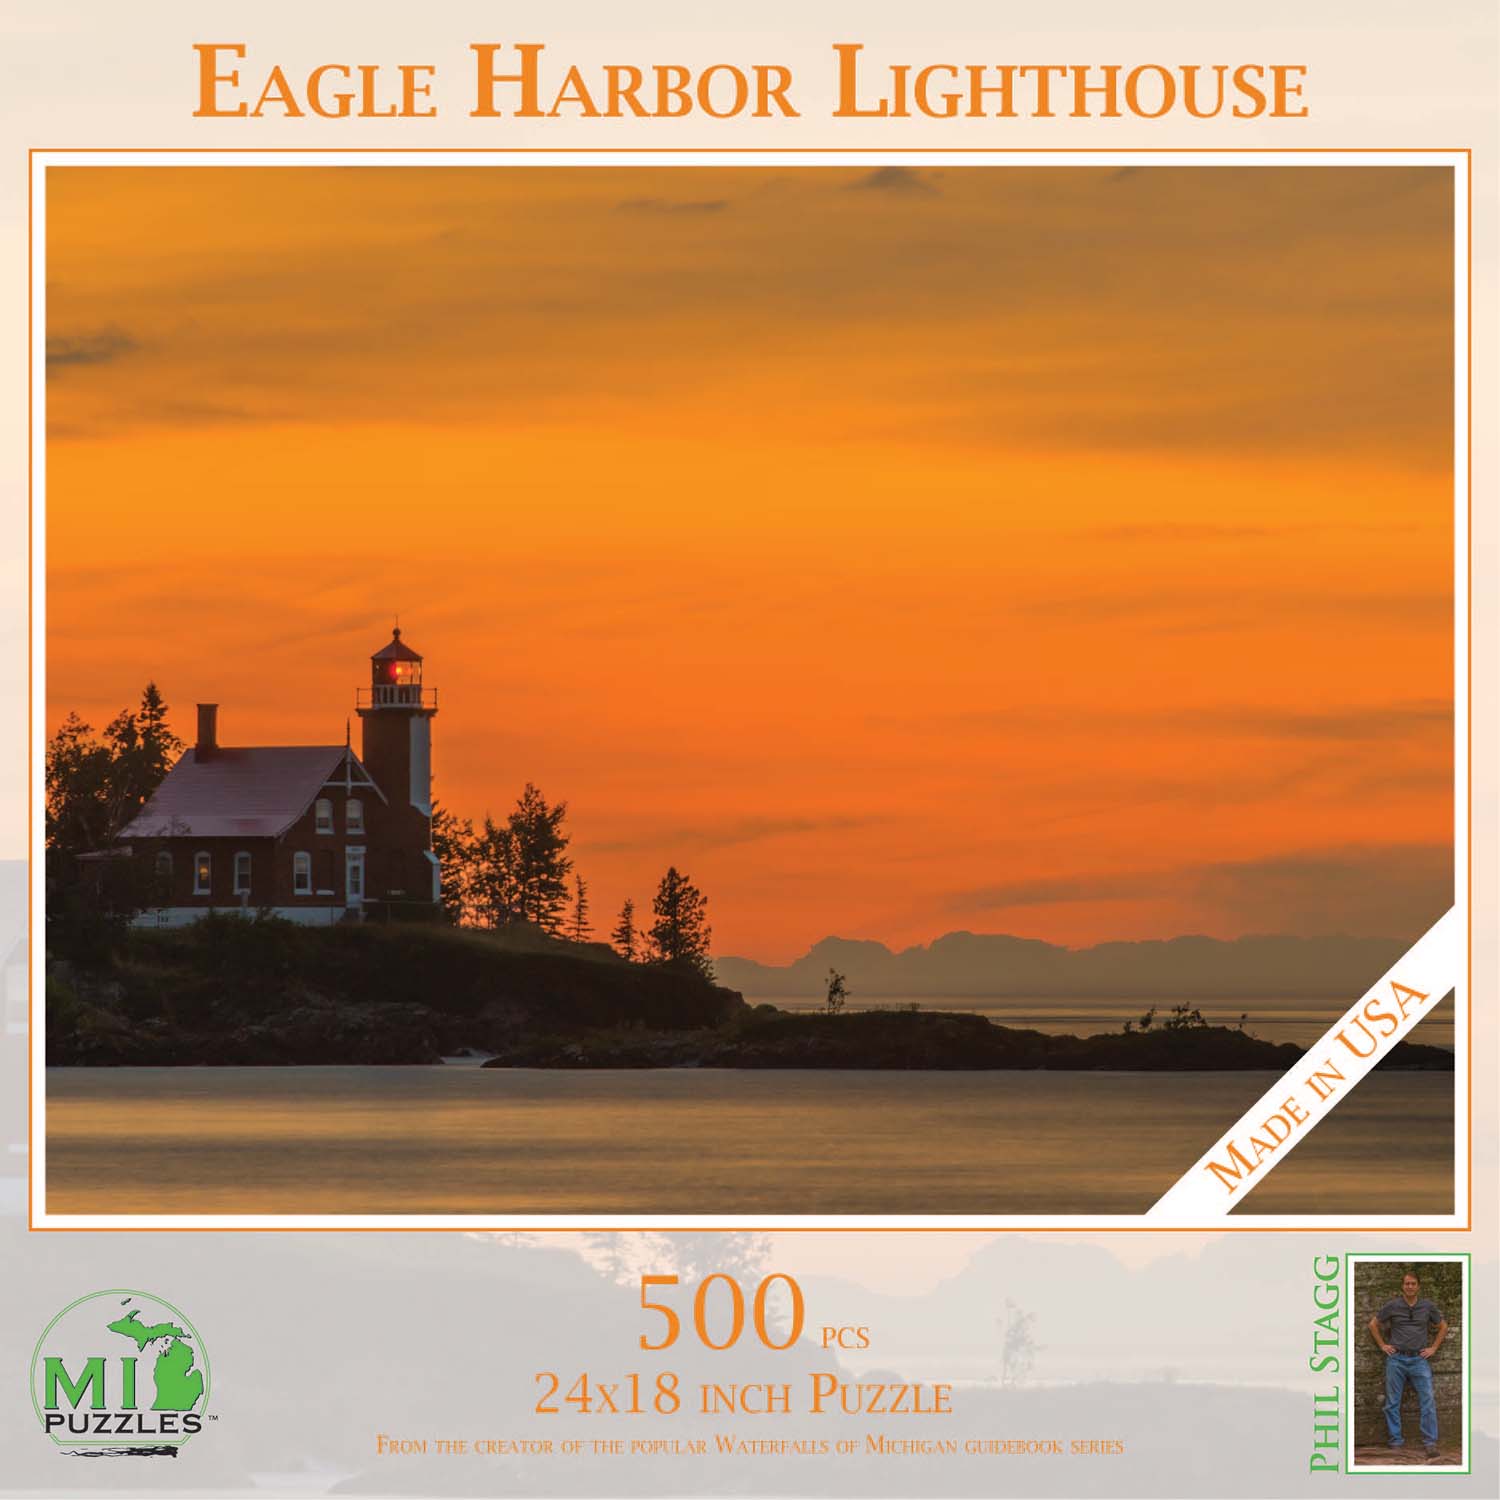 Eagle Harbor Lighthouse Lighthouse Jigsaw Puzzle